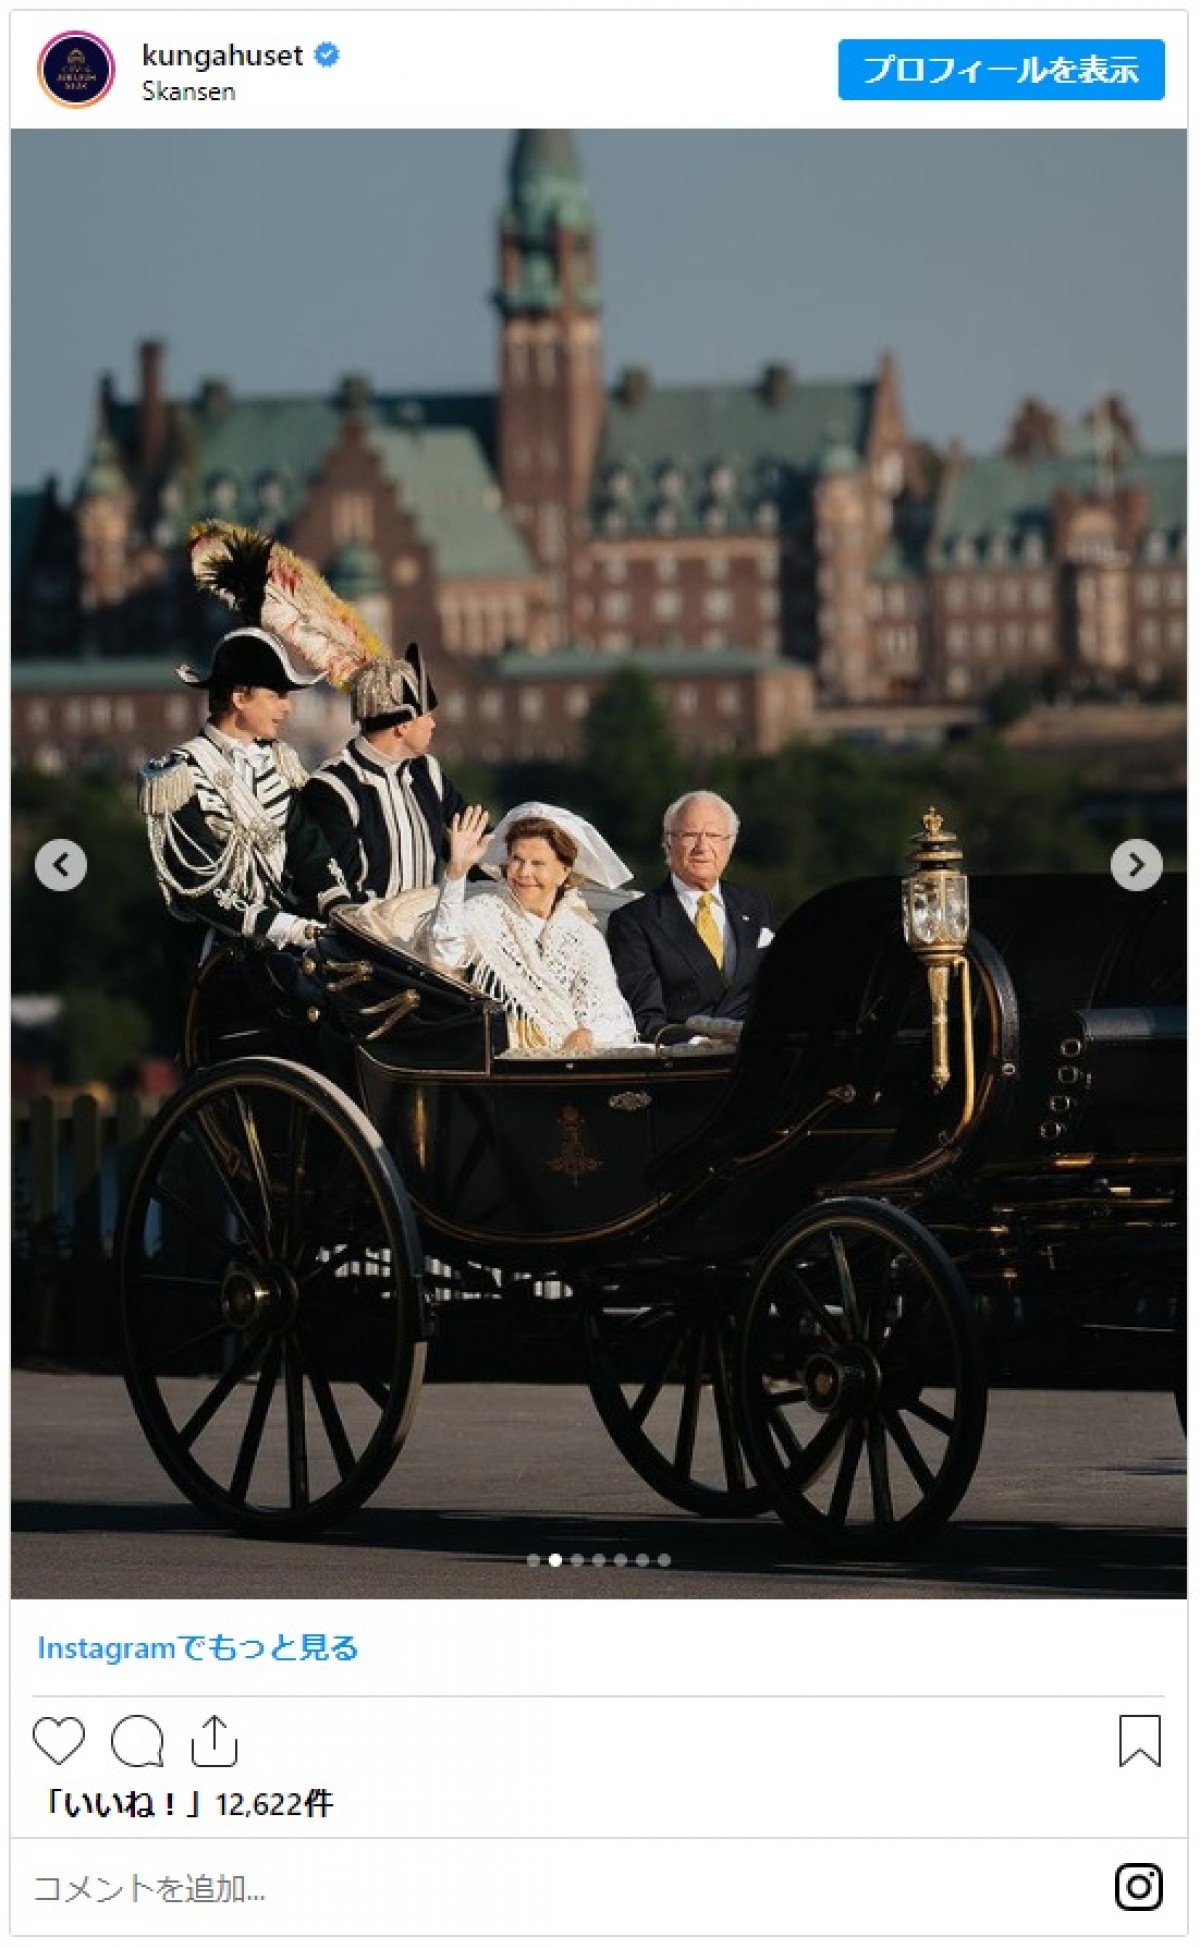 スウェーデン王室エステル王女、民族衣装を纏ったキュートな姿を披露